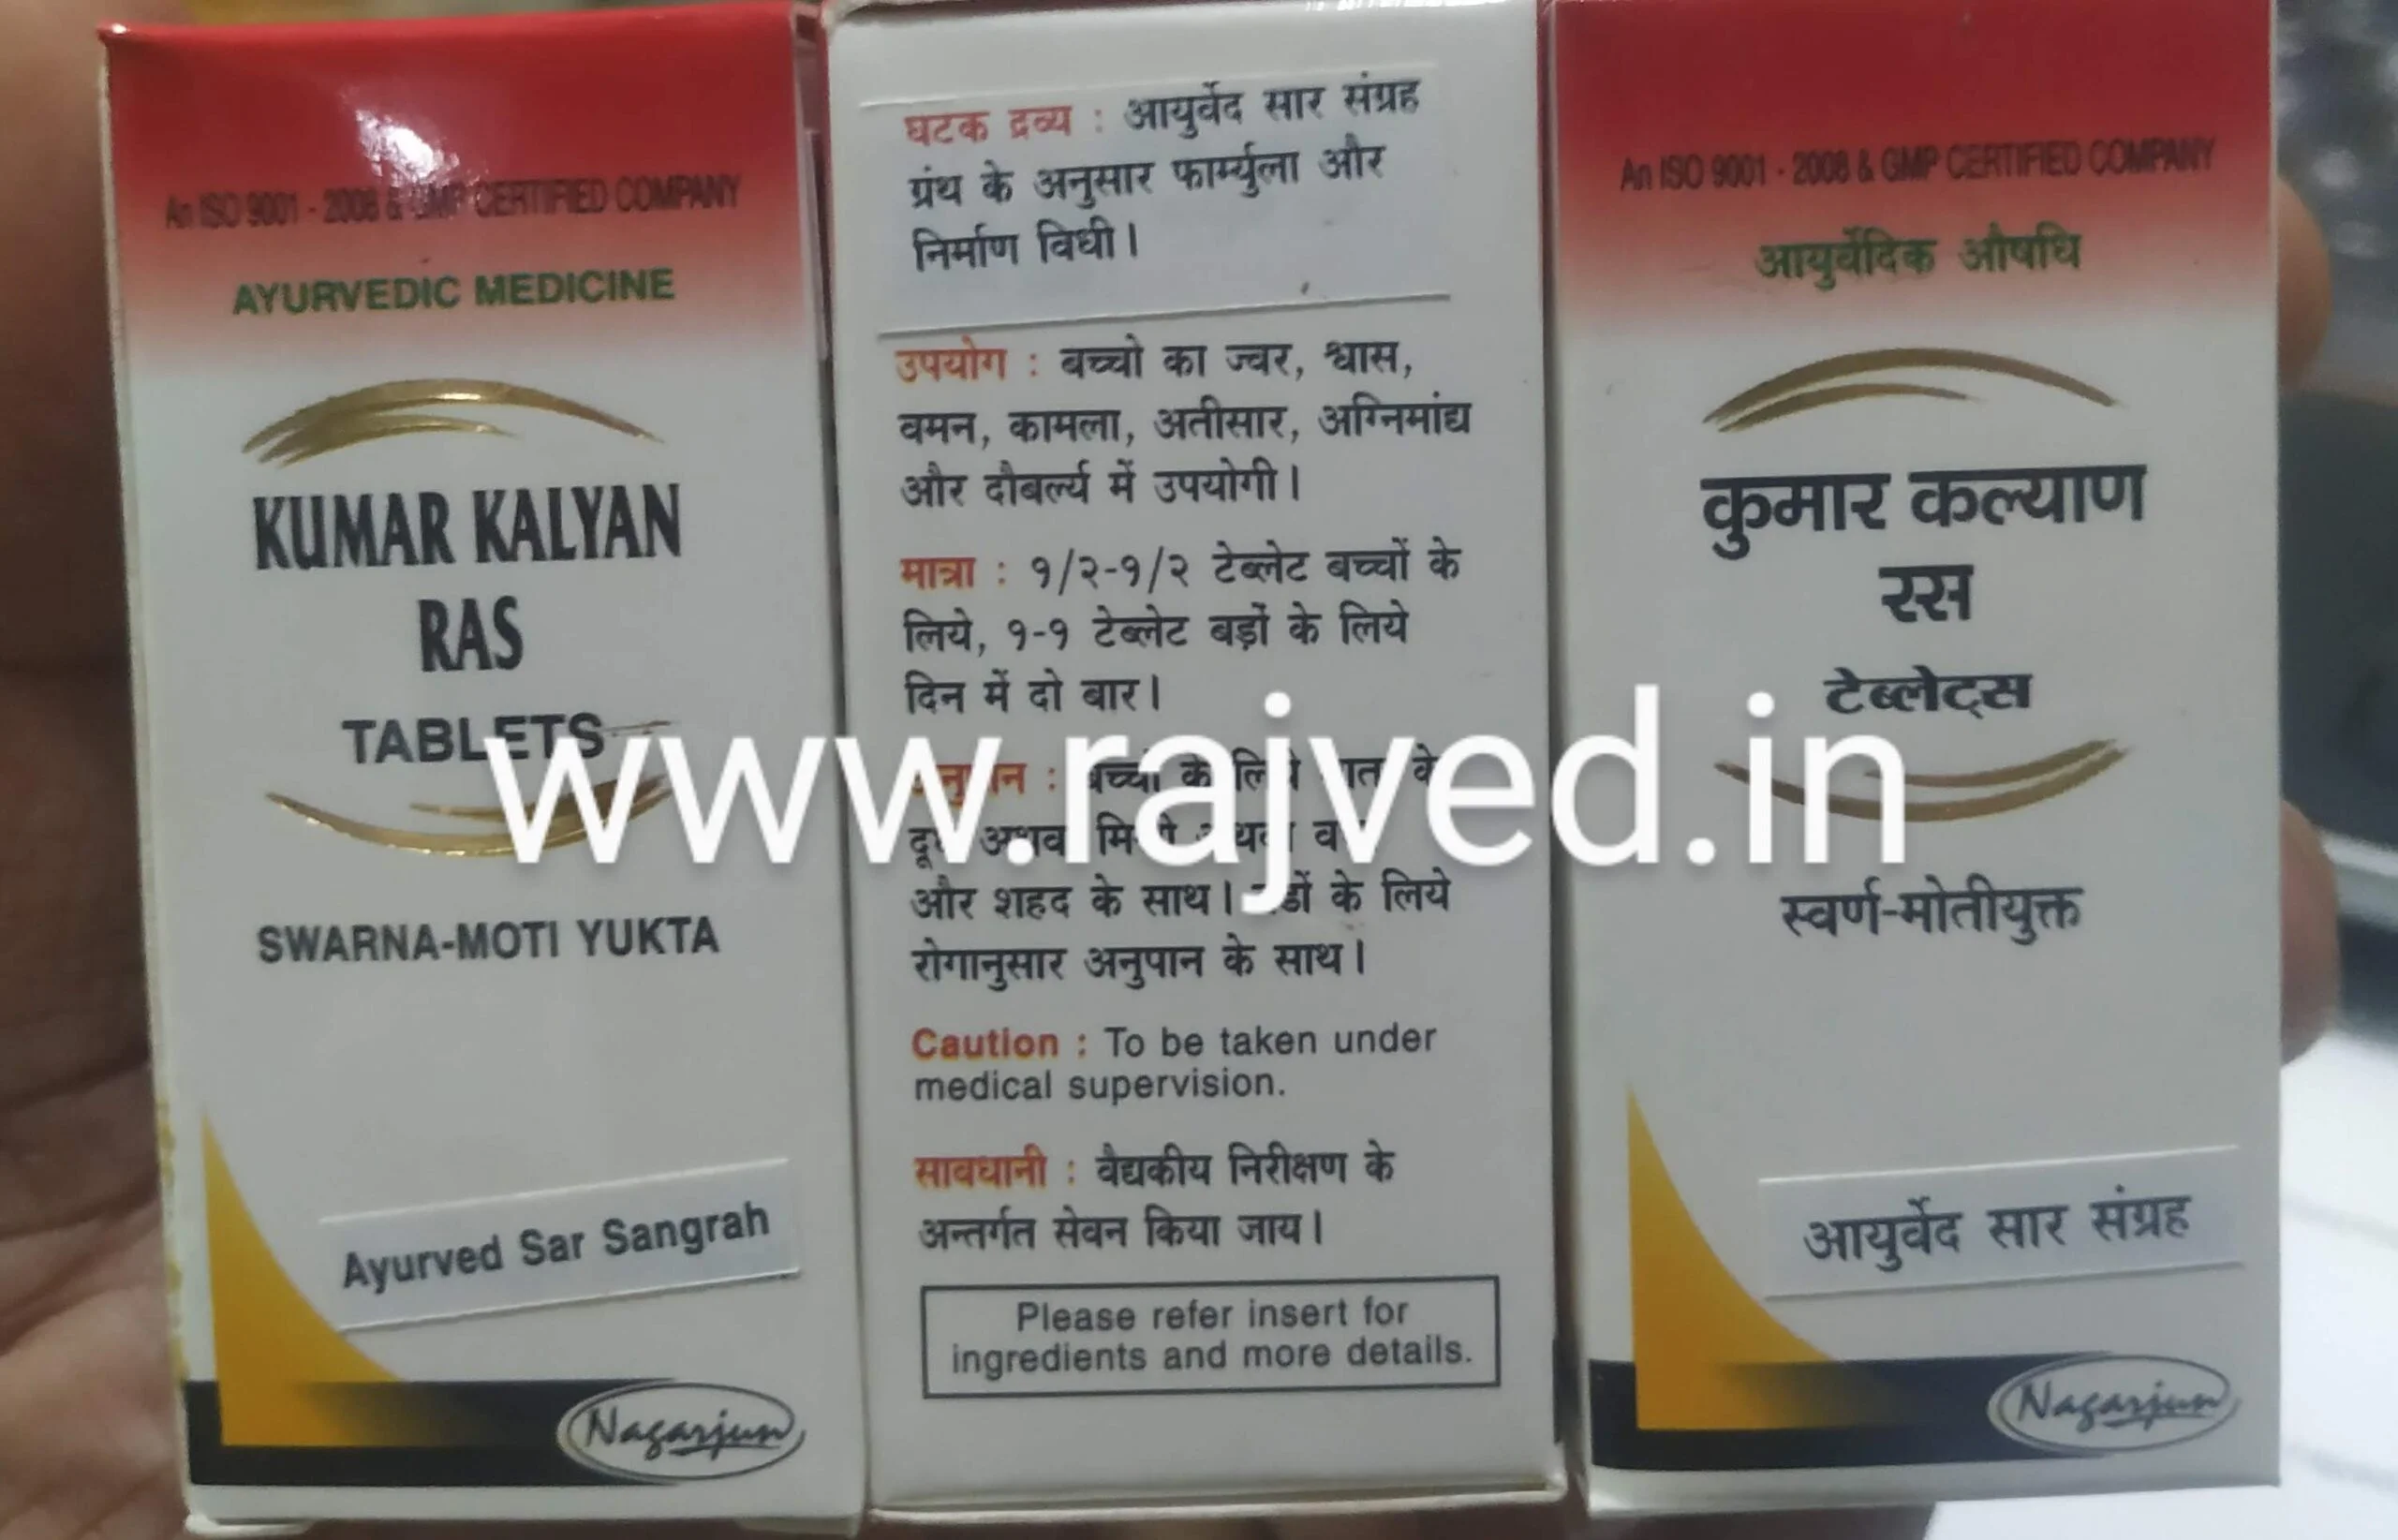 kumar kalyan ras tablets swarna moti yukta 5tab upto 20% off Nagarjun Pharma Gujarat